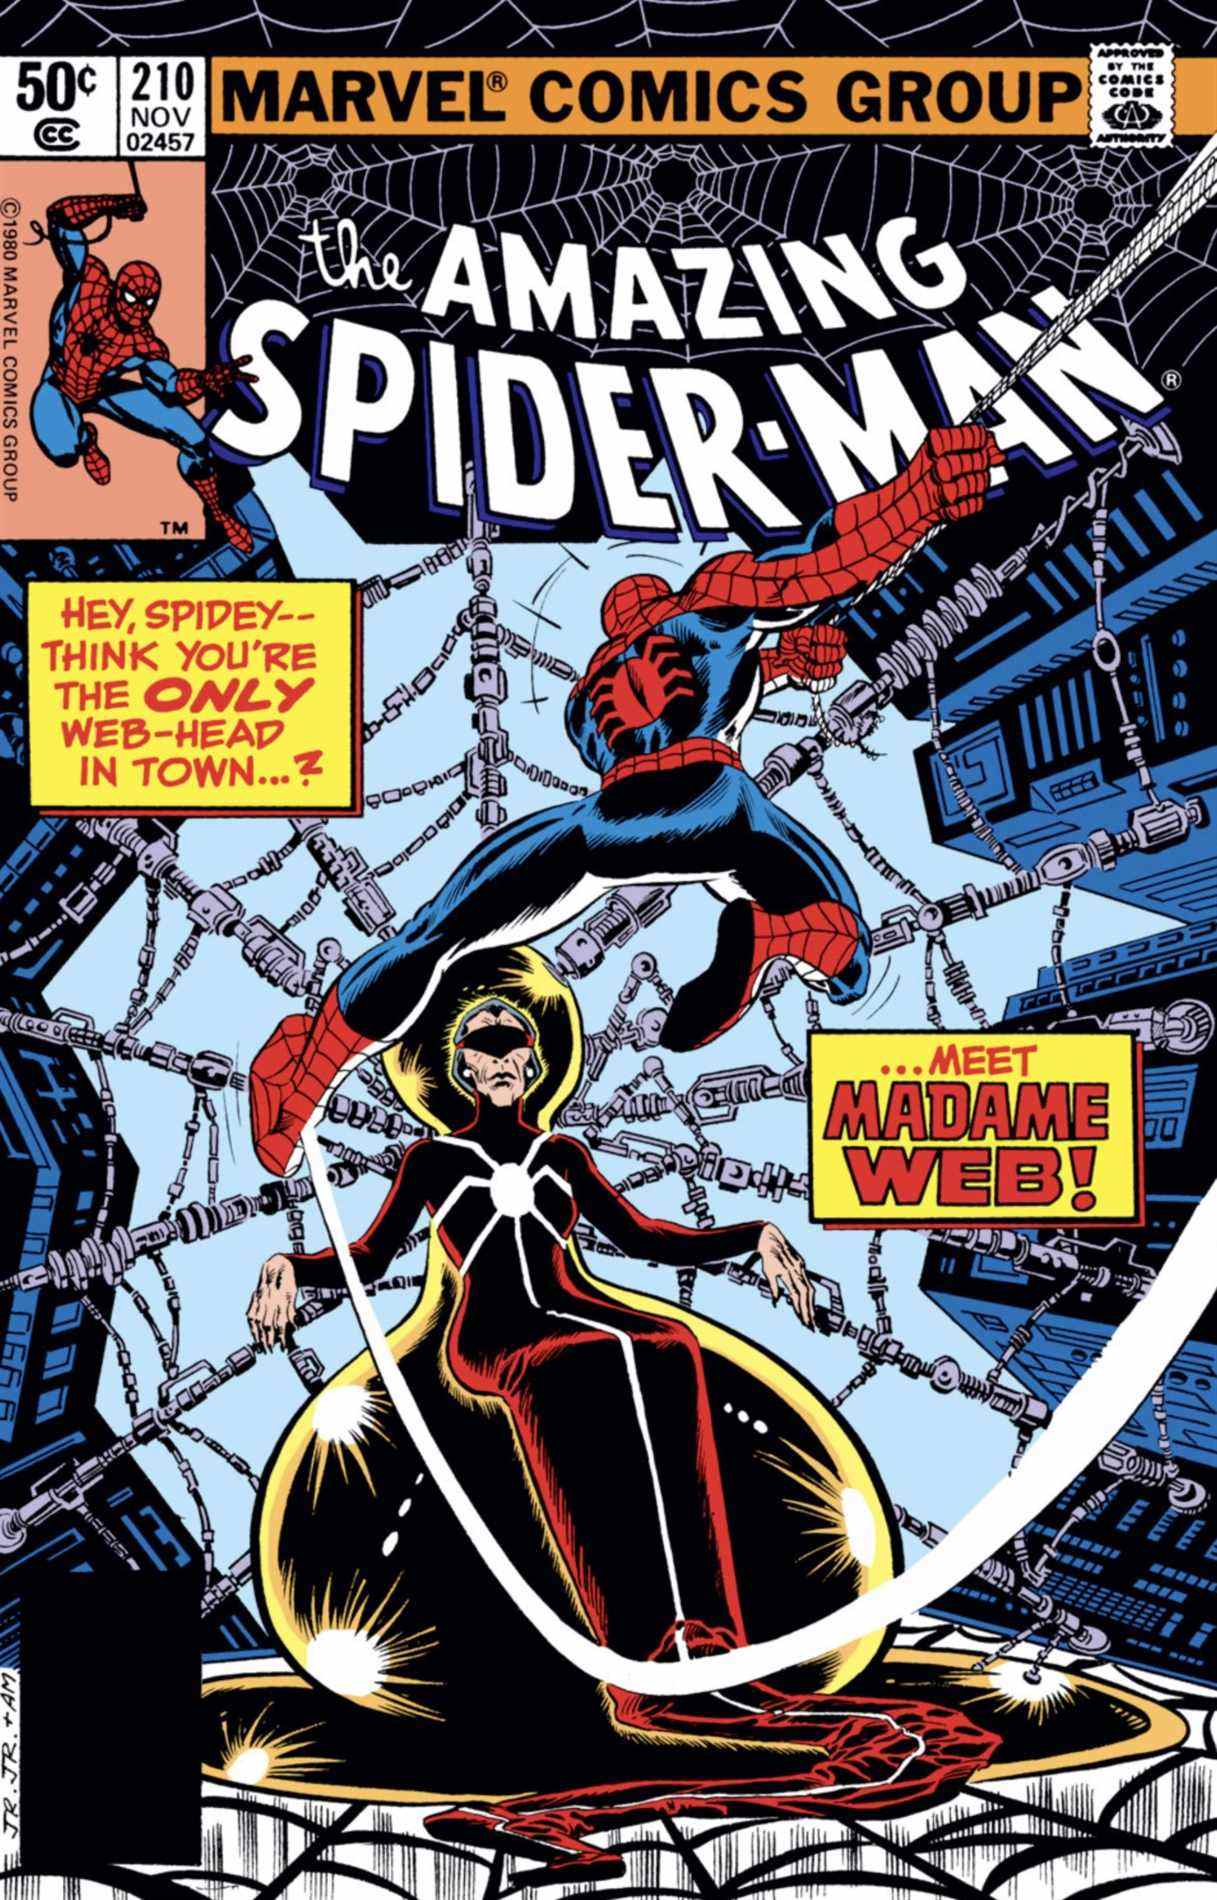 Incroyable couverture de Spider-Man #210